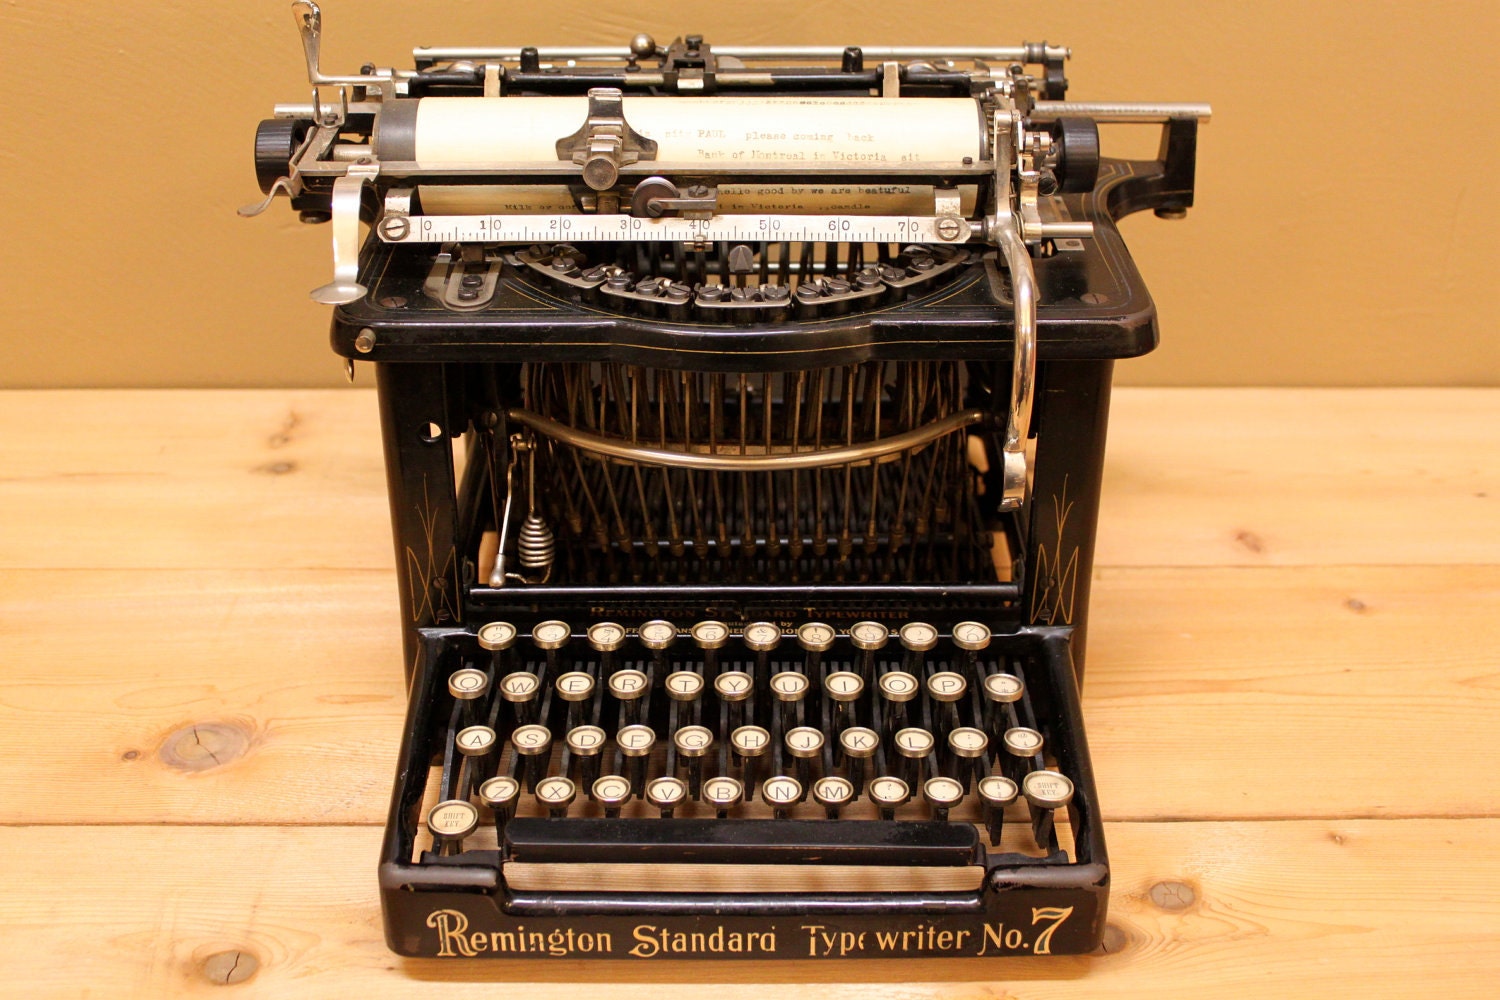 Remington Standard Typewriter number 7 circa 1896